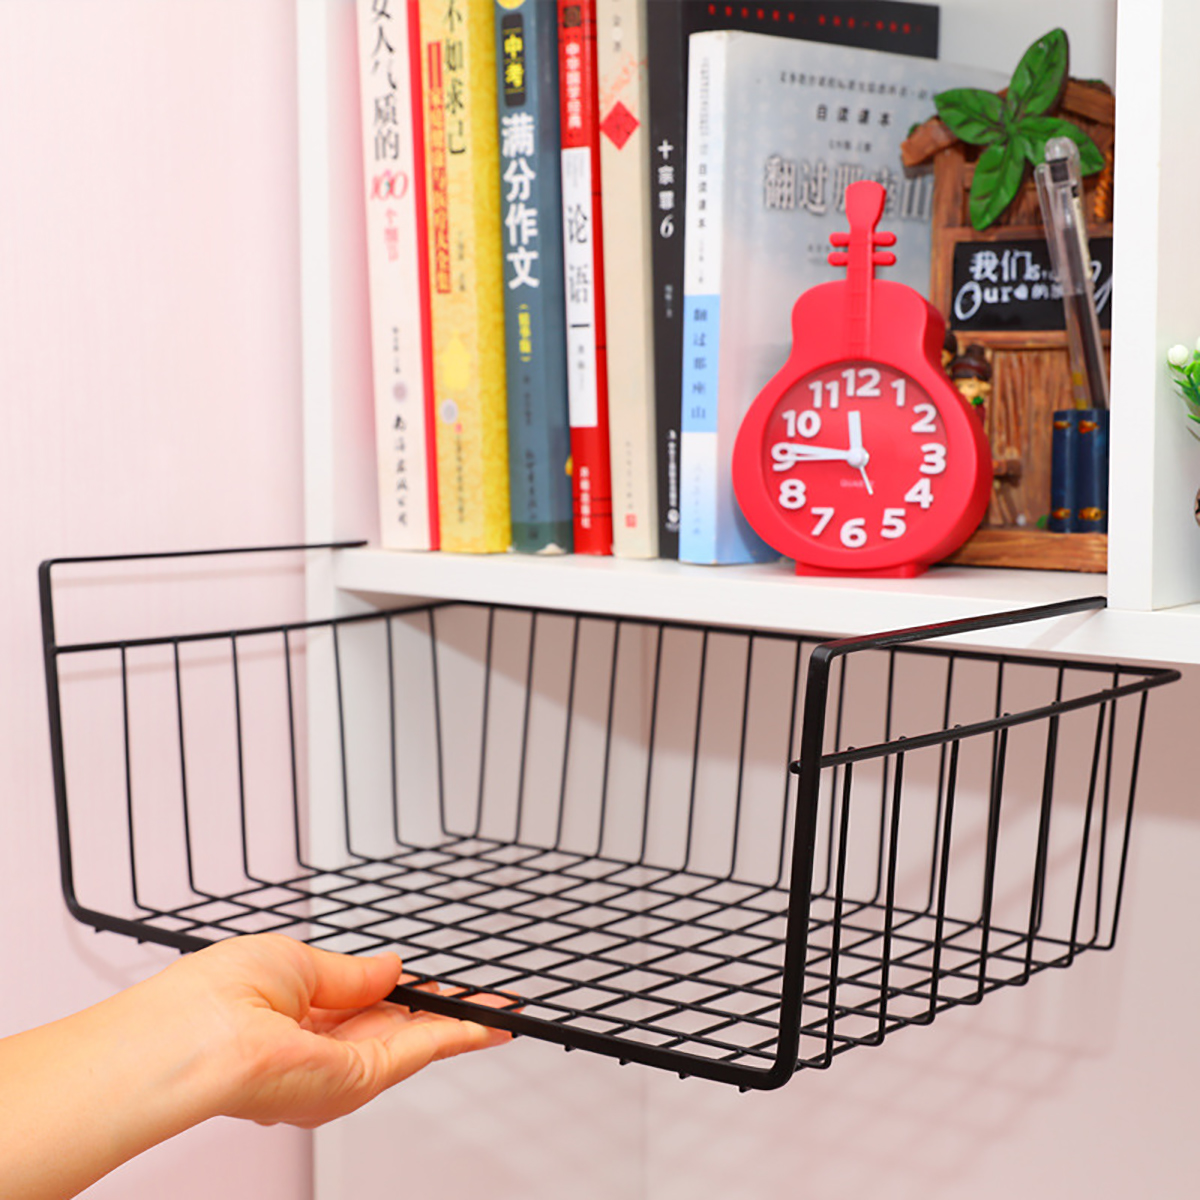 Under-Shelf-Storage-Hanging-Rack-Kitchen-Holder-Basket-Table-Cabinet-Organizer-1703470-10